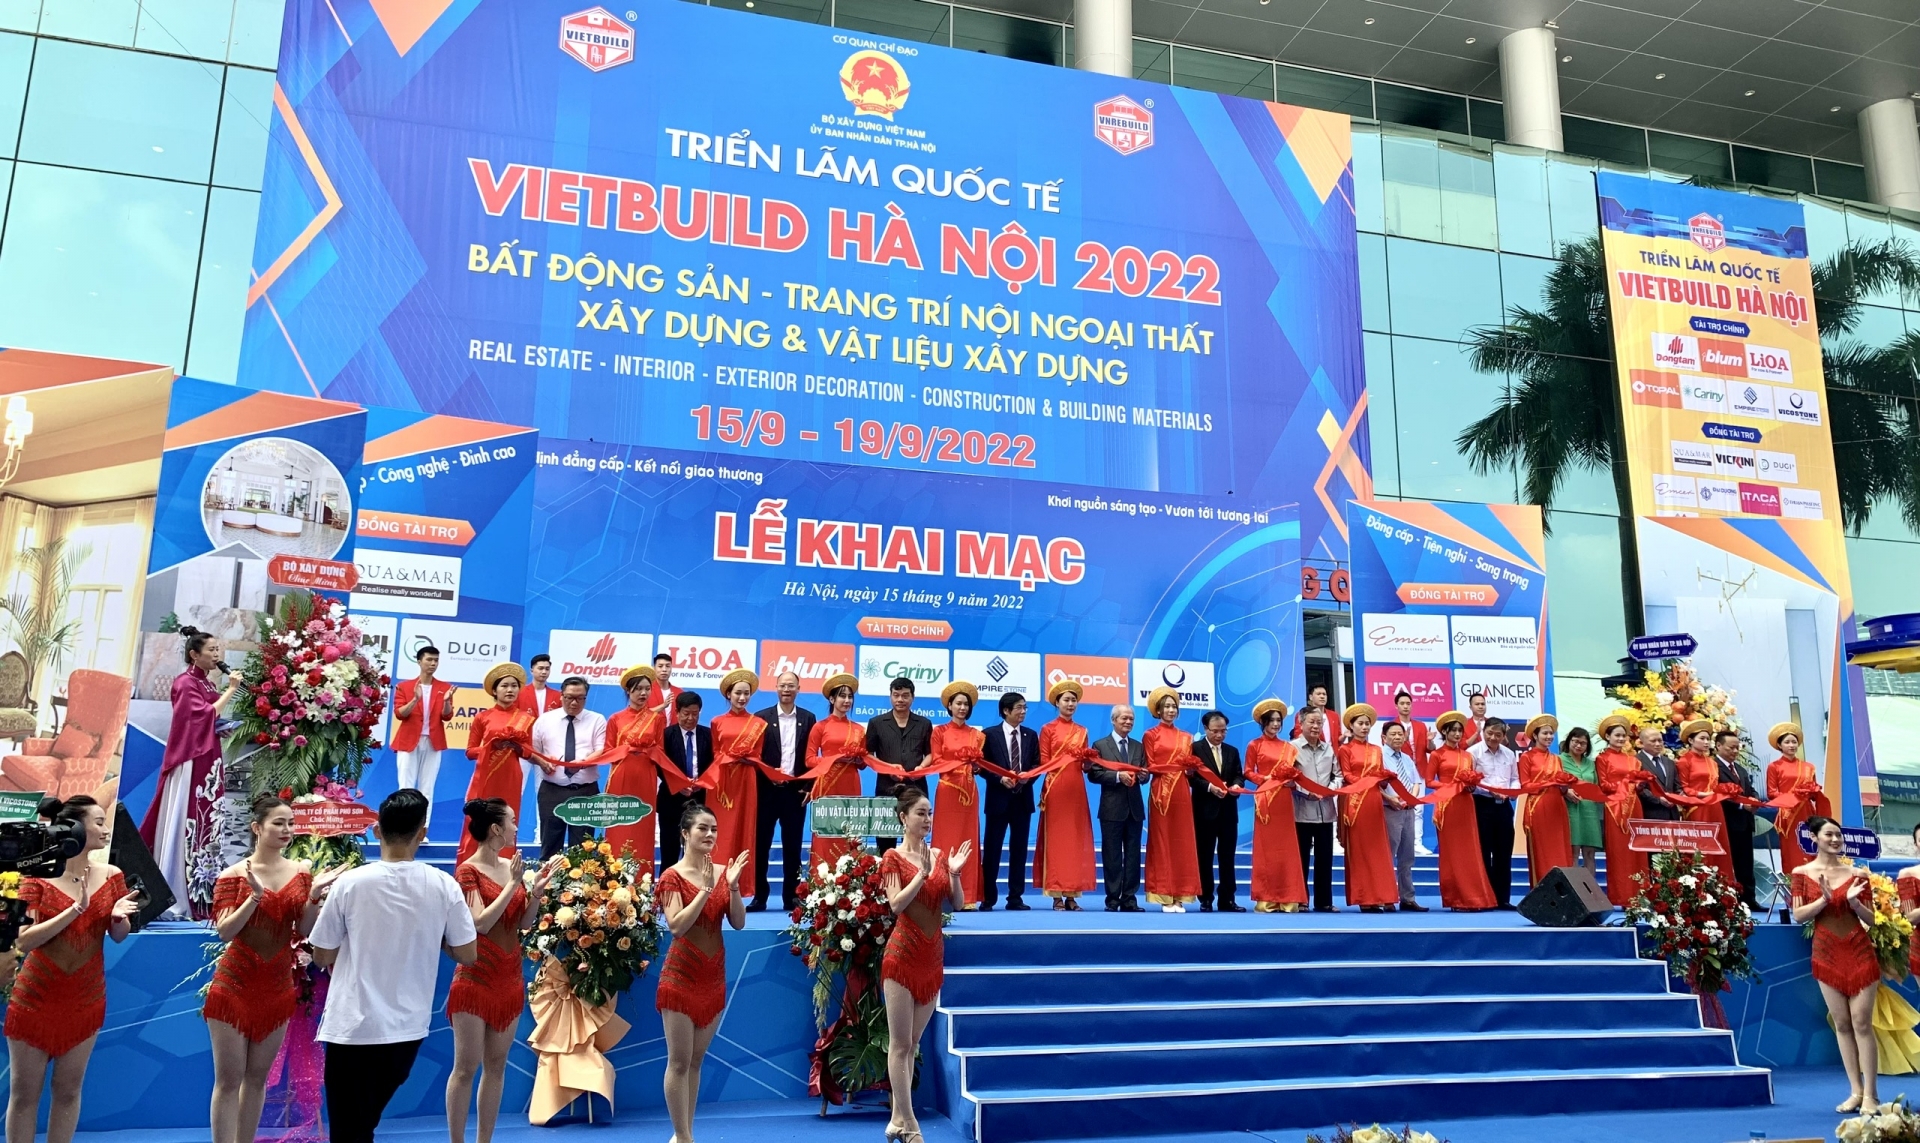 Khai mạc VIETBUILD Hà Nội 2022 lần 2